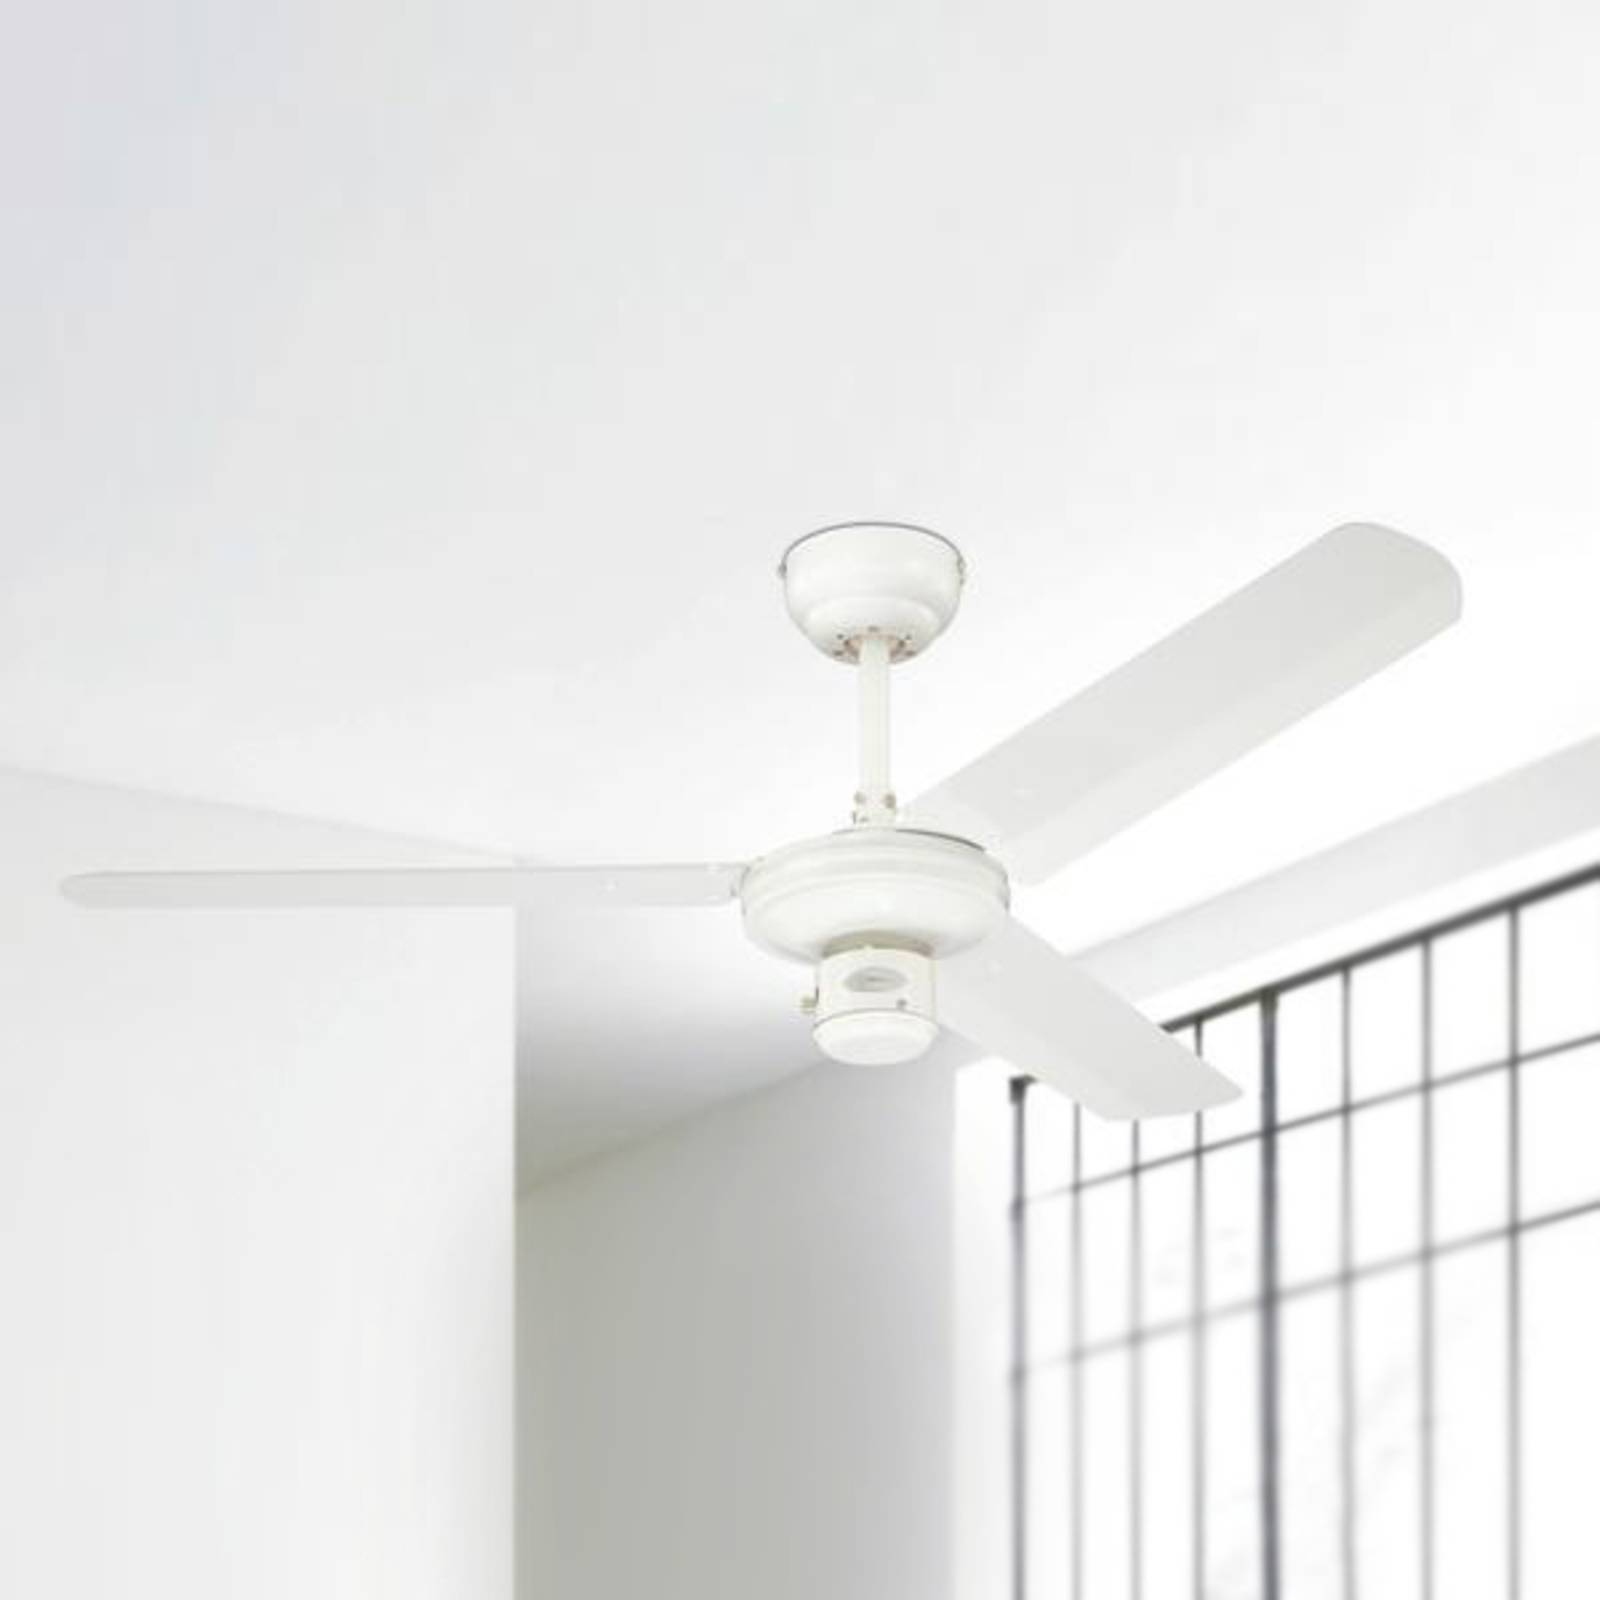 Image of Ventilateur de plafond blanc Industrial 4895105600226